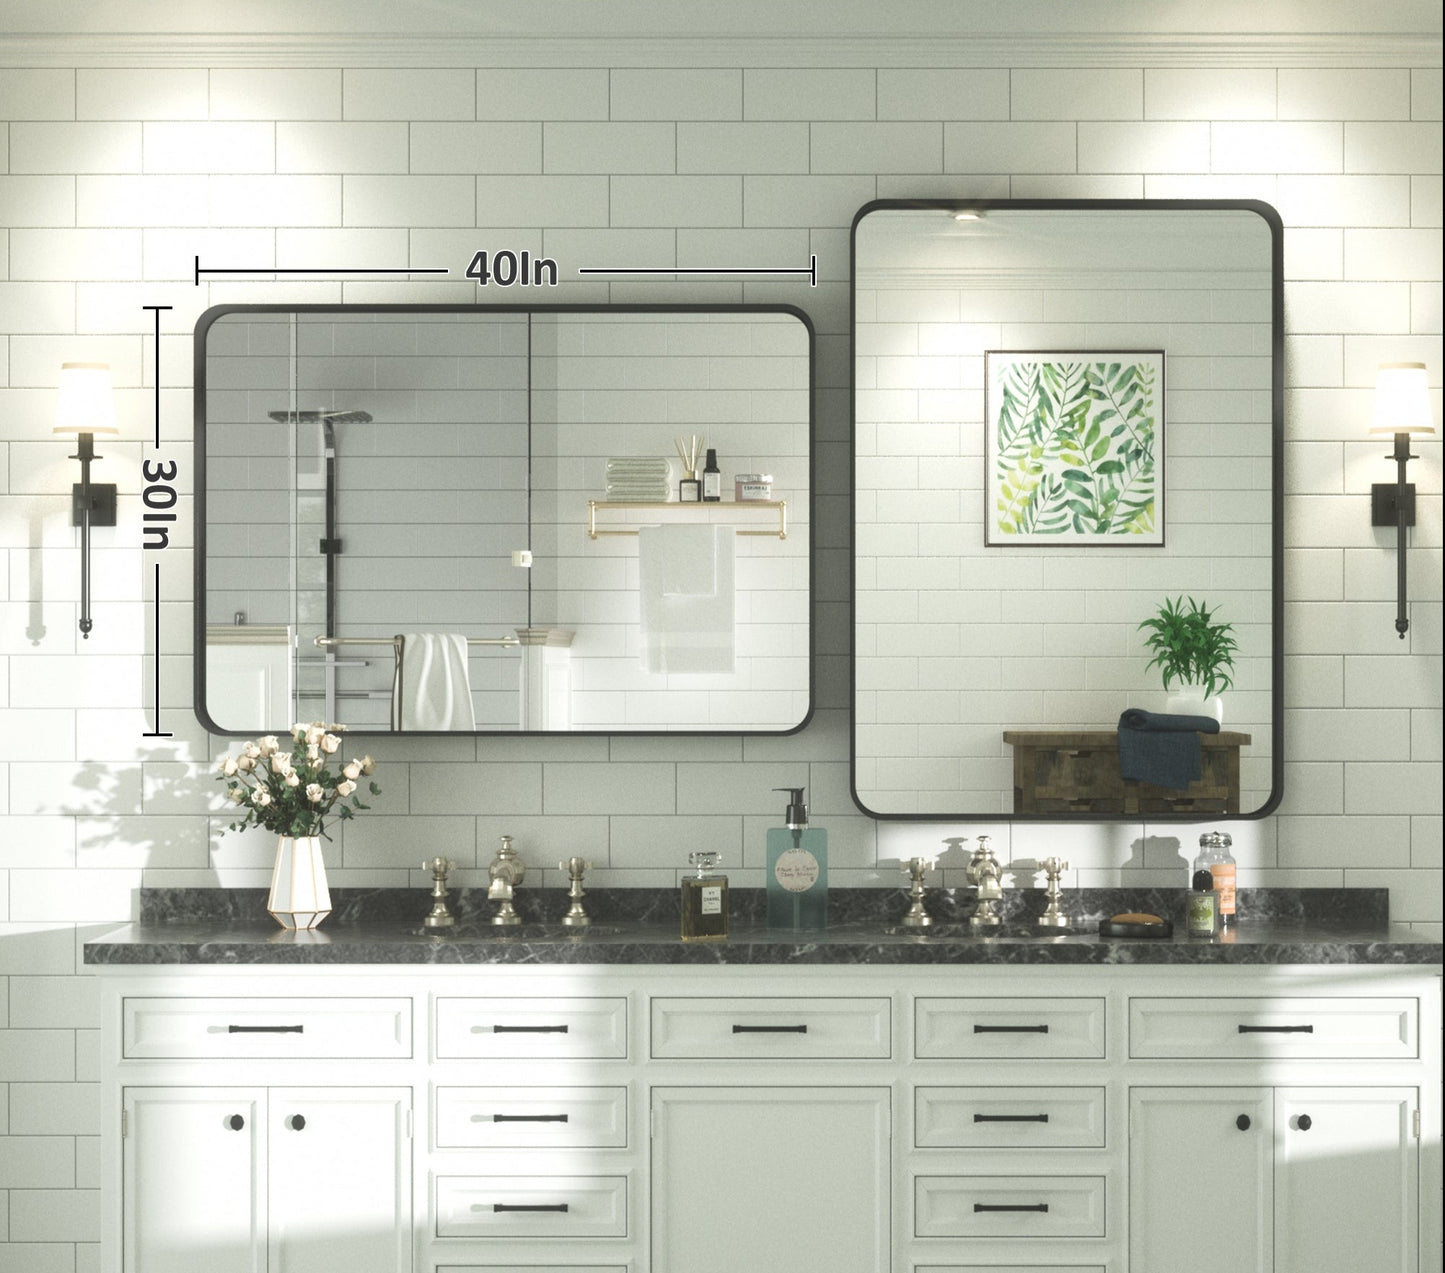 
                  
                    101,6 x 76,2 cm Pilocos moderne contemporain grand miroir à texture nervurée pour salle de bain/mur/chambre/entrée
                  
                